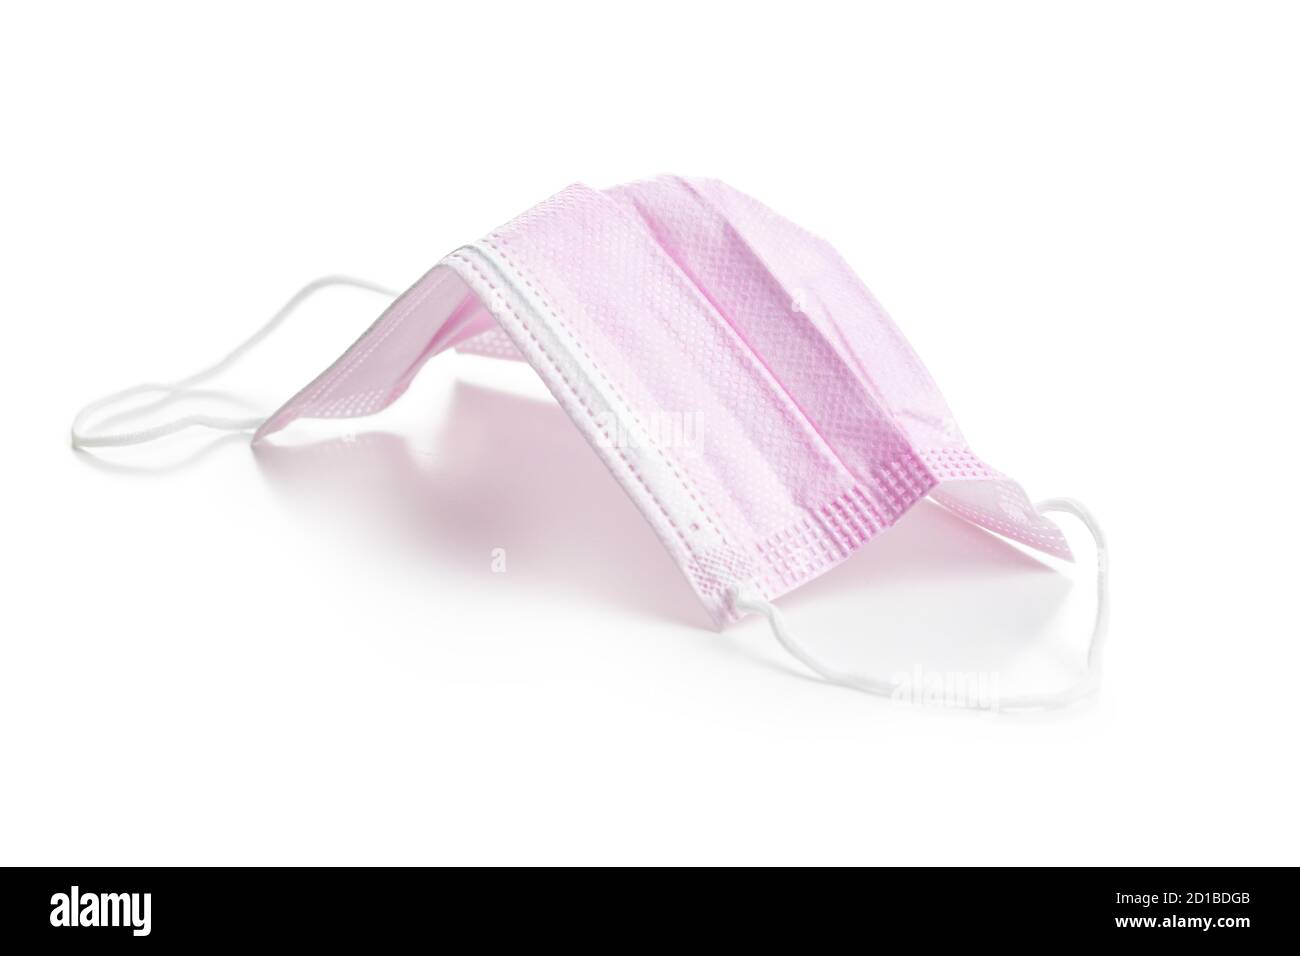 Protezione da virus corona. Maschera di carta medica rosa isolata su sfondo bianco. Foto Stock